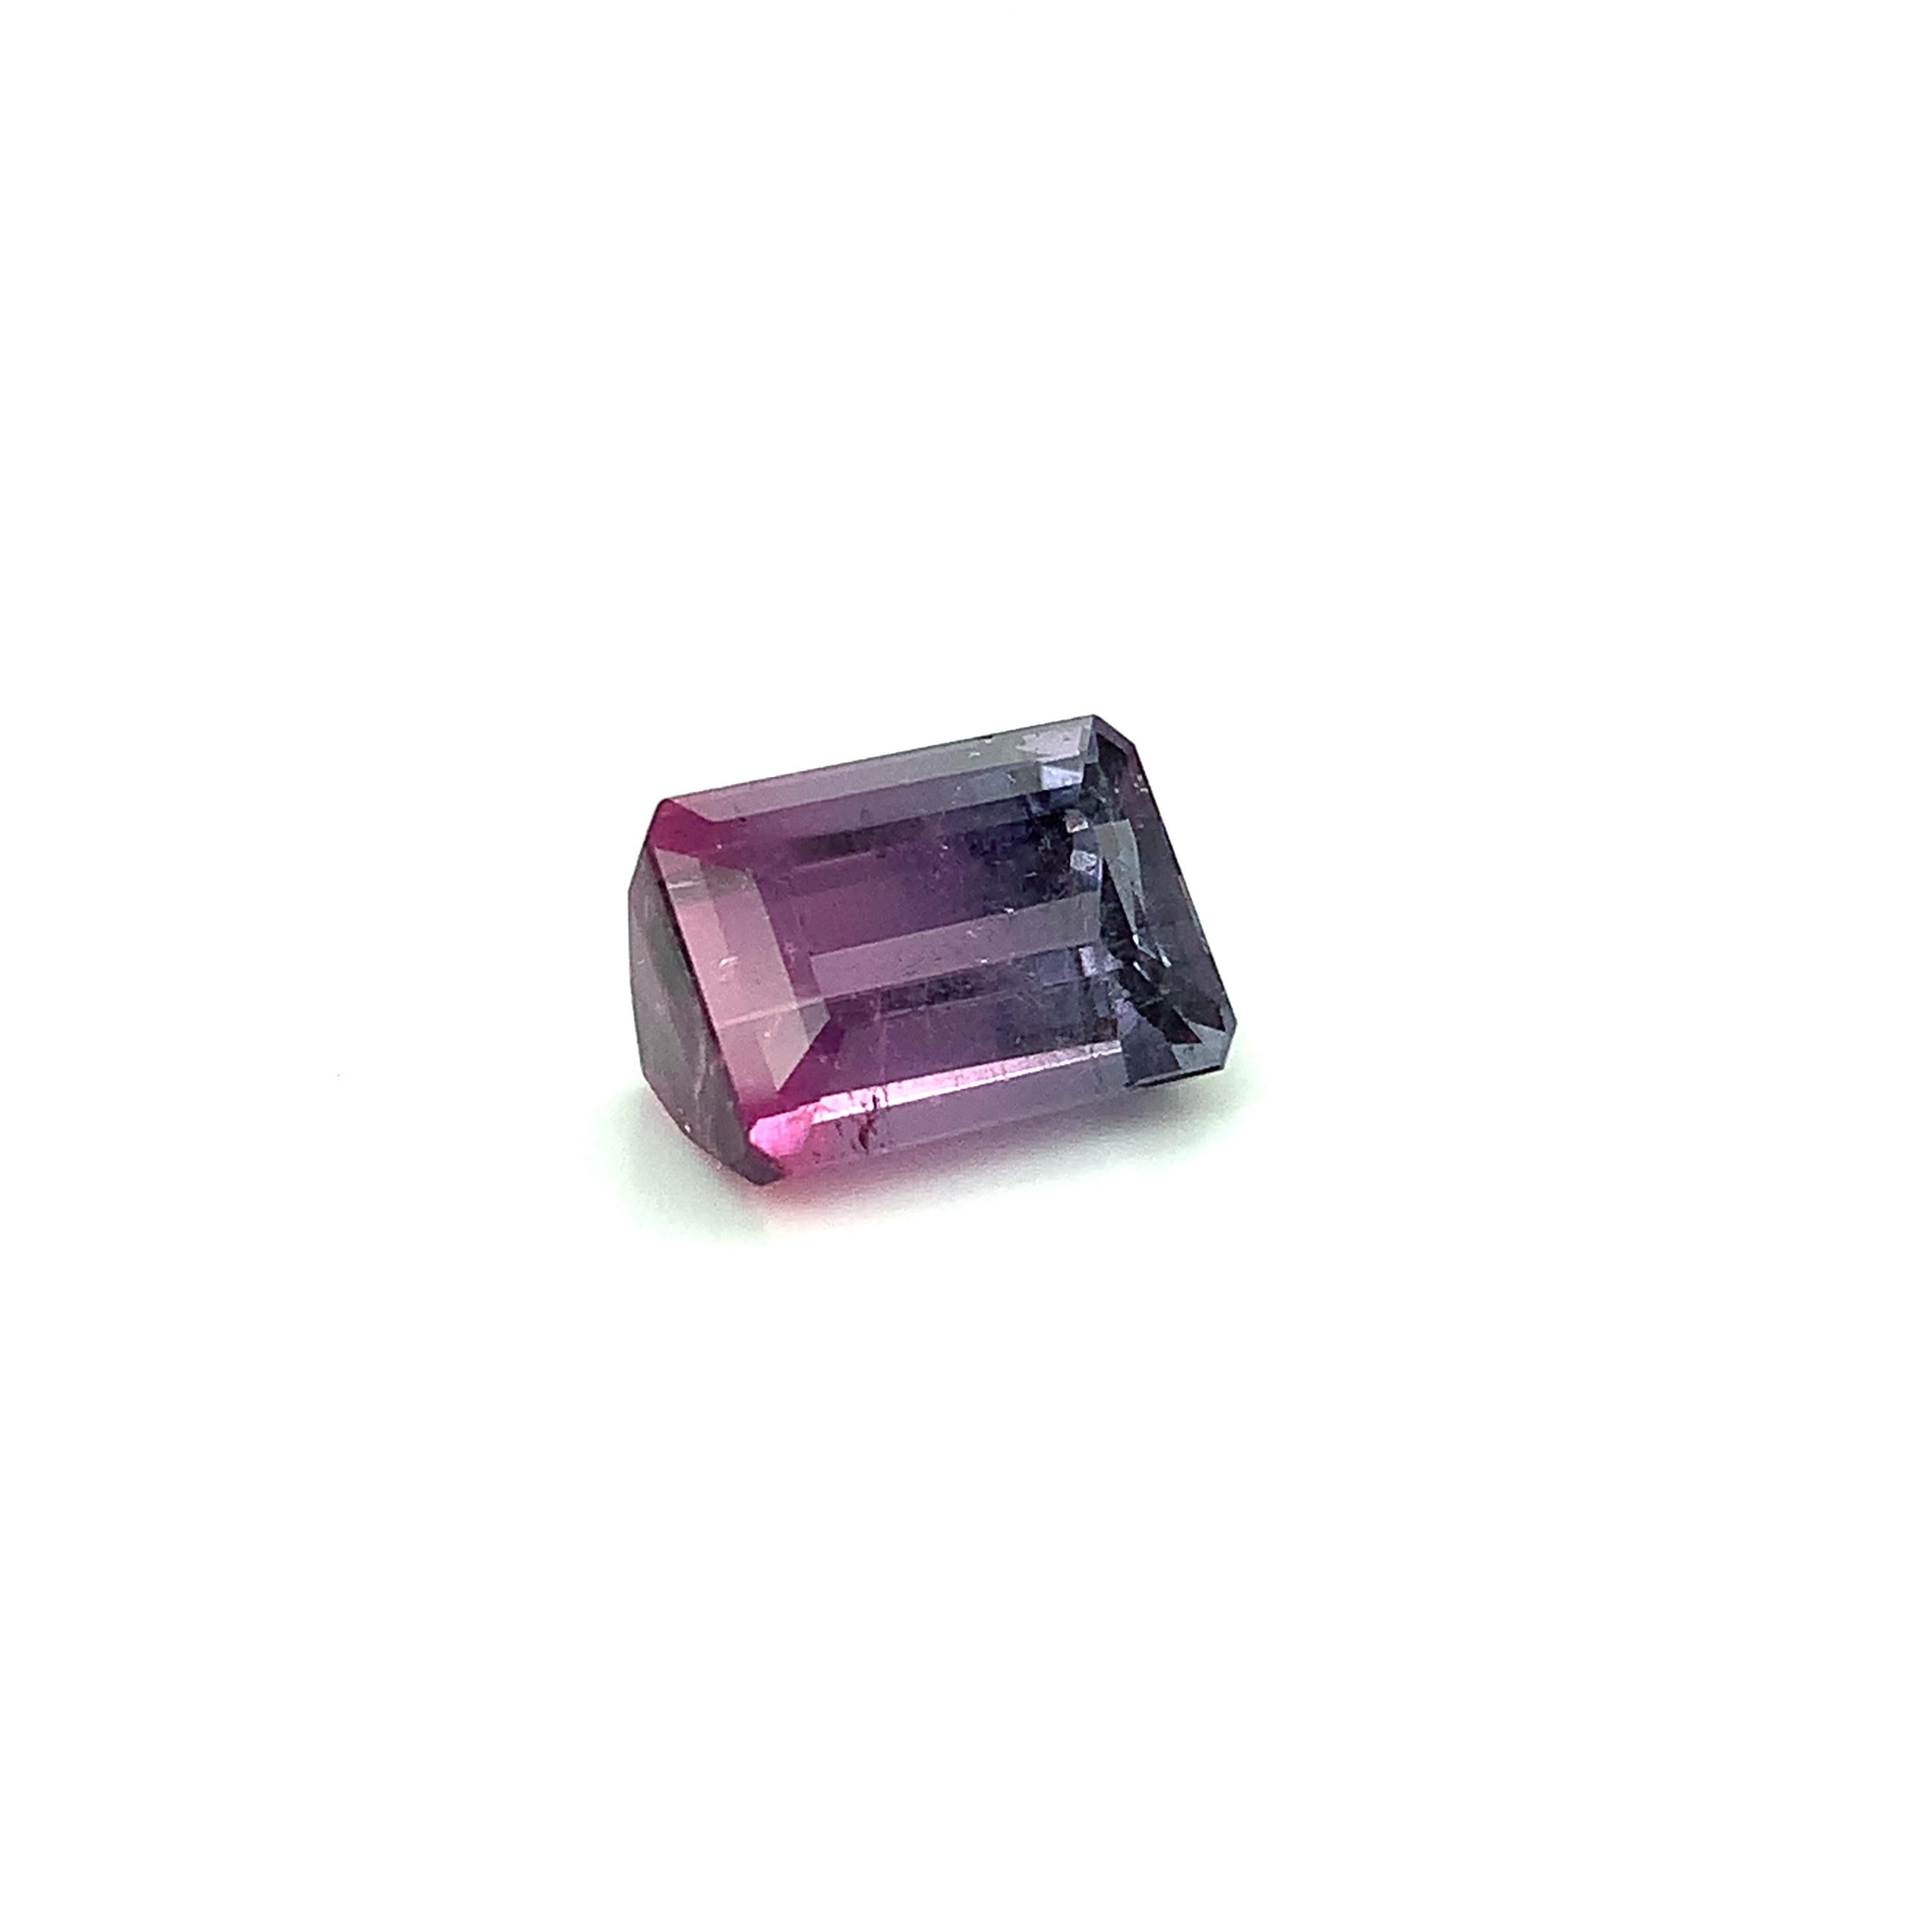 La tourmaline existe dans toutes les couleurs de l'arc-en-ciel, mais la tourmaline violette est assez inhabituelle, surtout dans les teintes violettes moyennes propres. Cette tourmaline cristalline de couleur partielle, violette et rose, taillée en